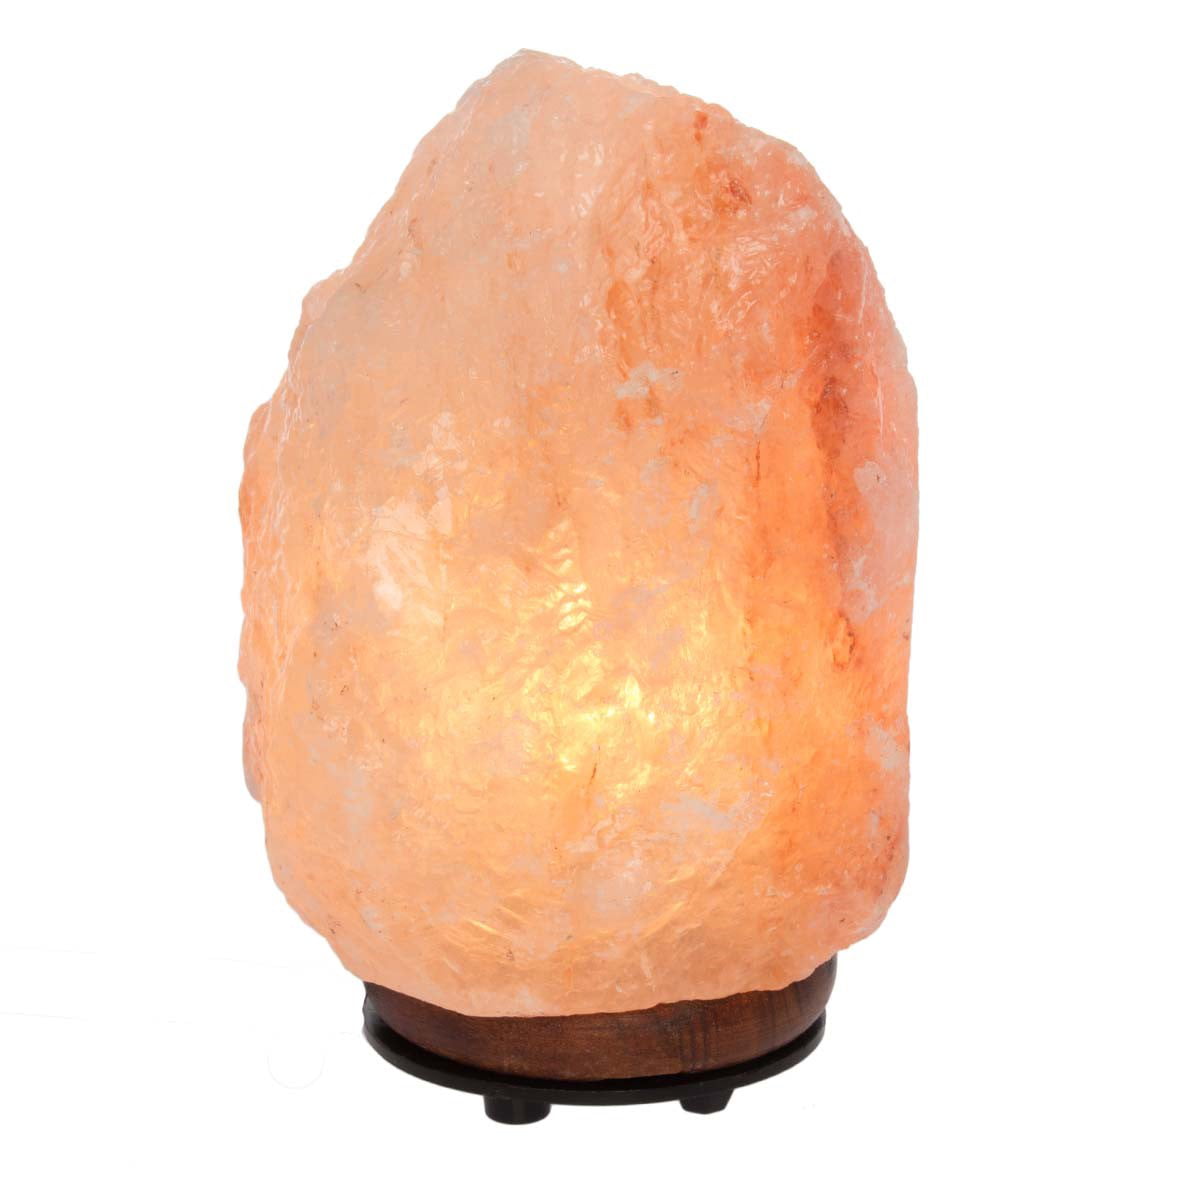 Himalayan Salt Lamp Rock Natural Crystal Night Light Air Purifier Home Decor US 